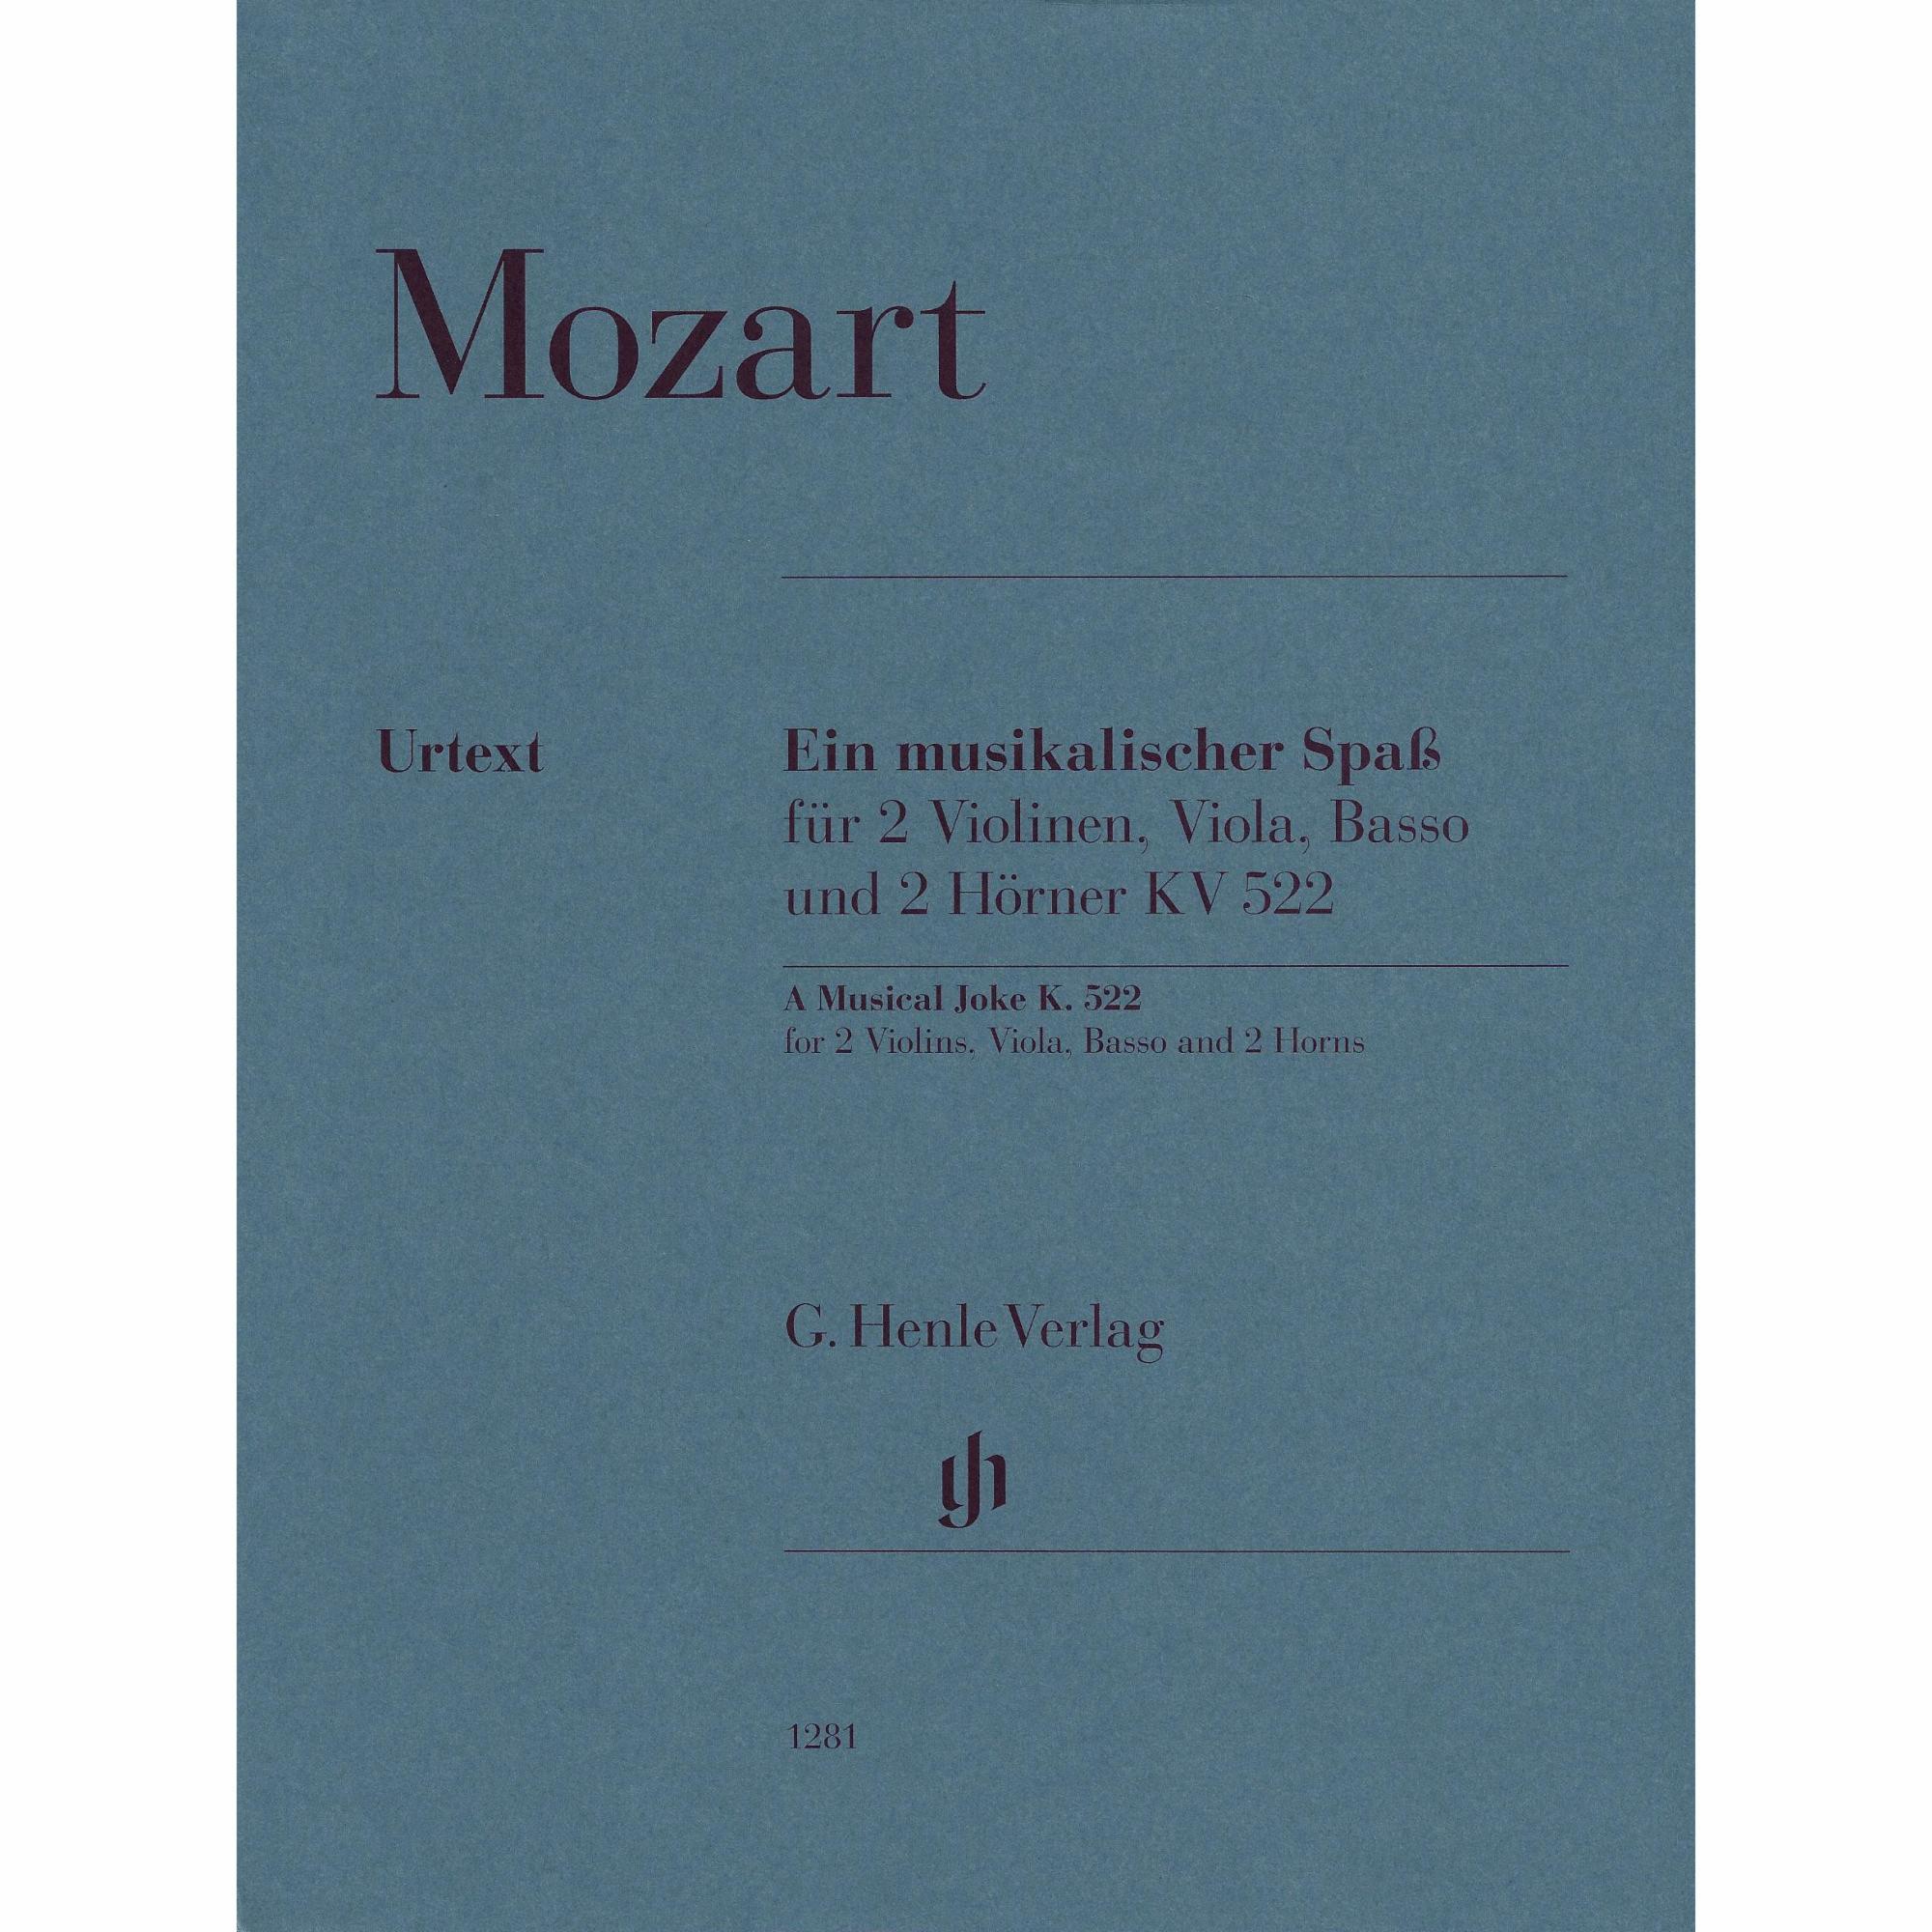 Mozart -- A Musical Joke, K. 522 for Mixed Sextet